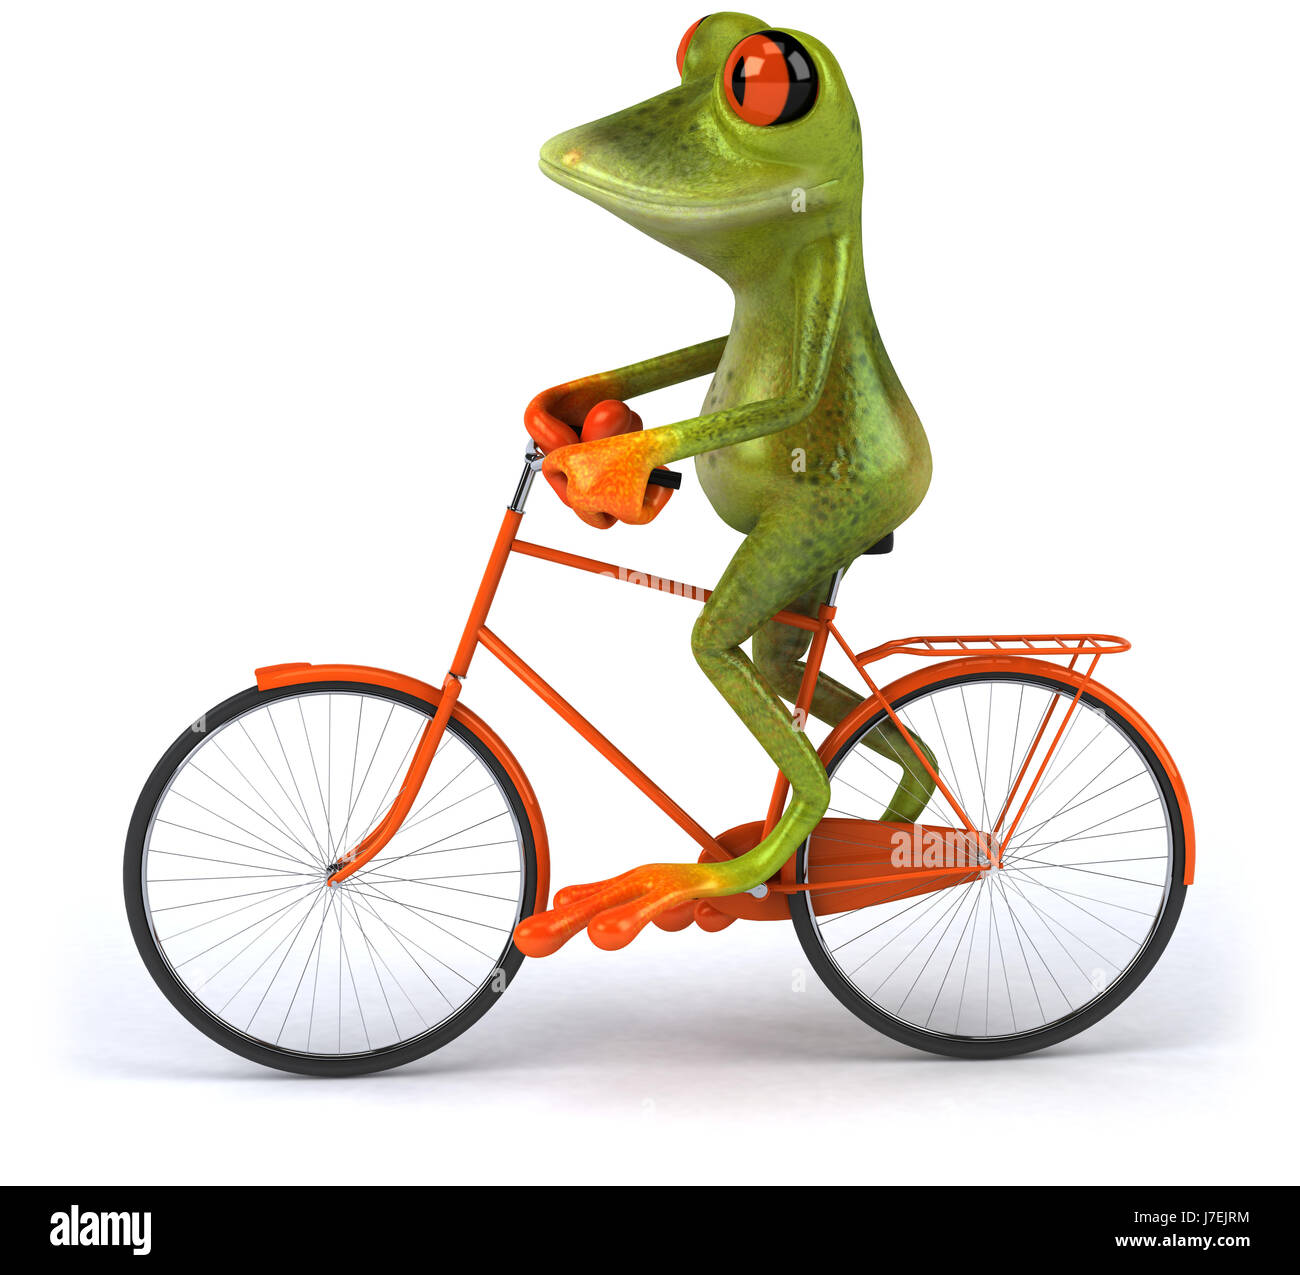 Environnement Environnement grenouille illustration animal vert cycle vélo Banque D'Images